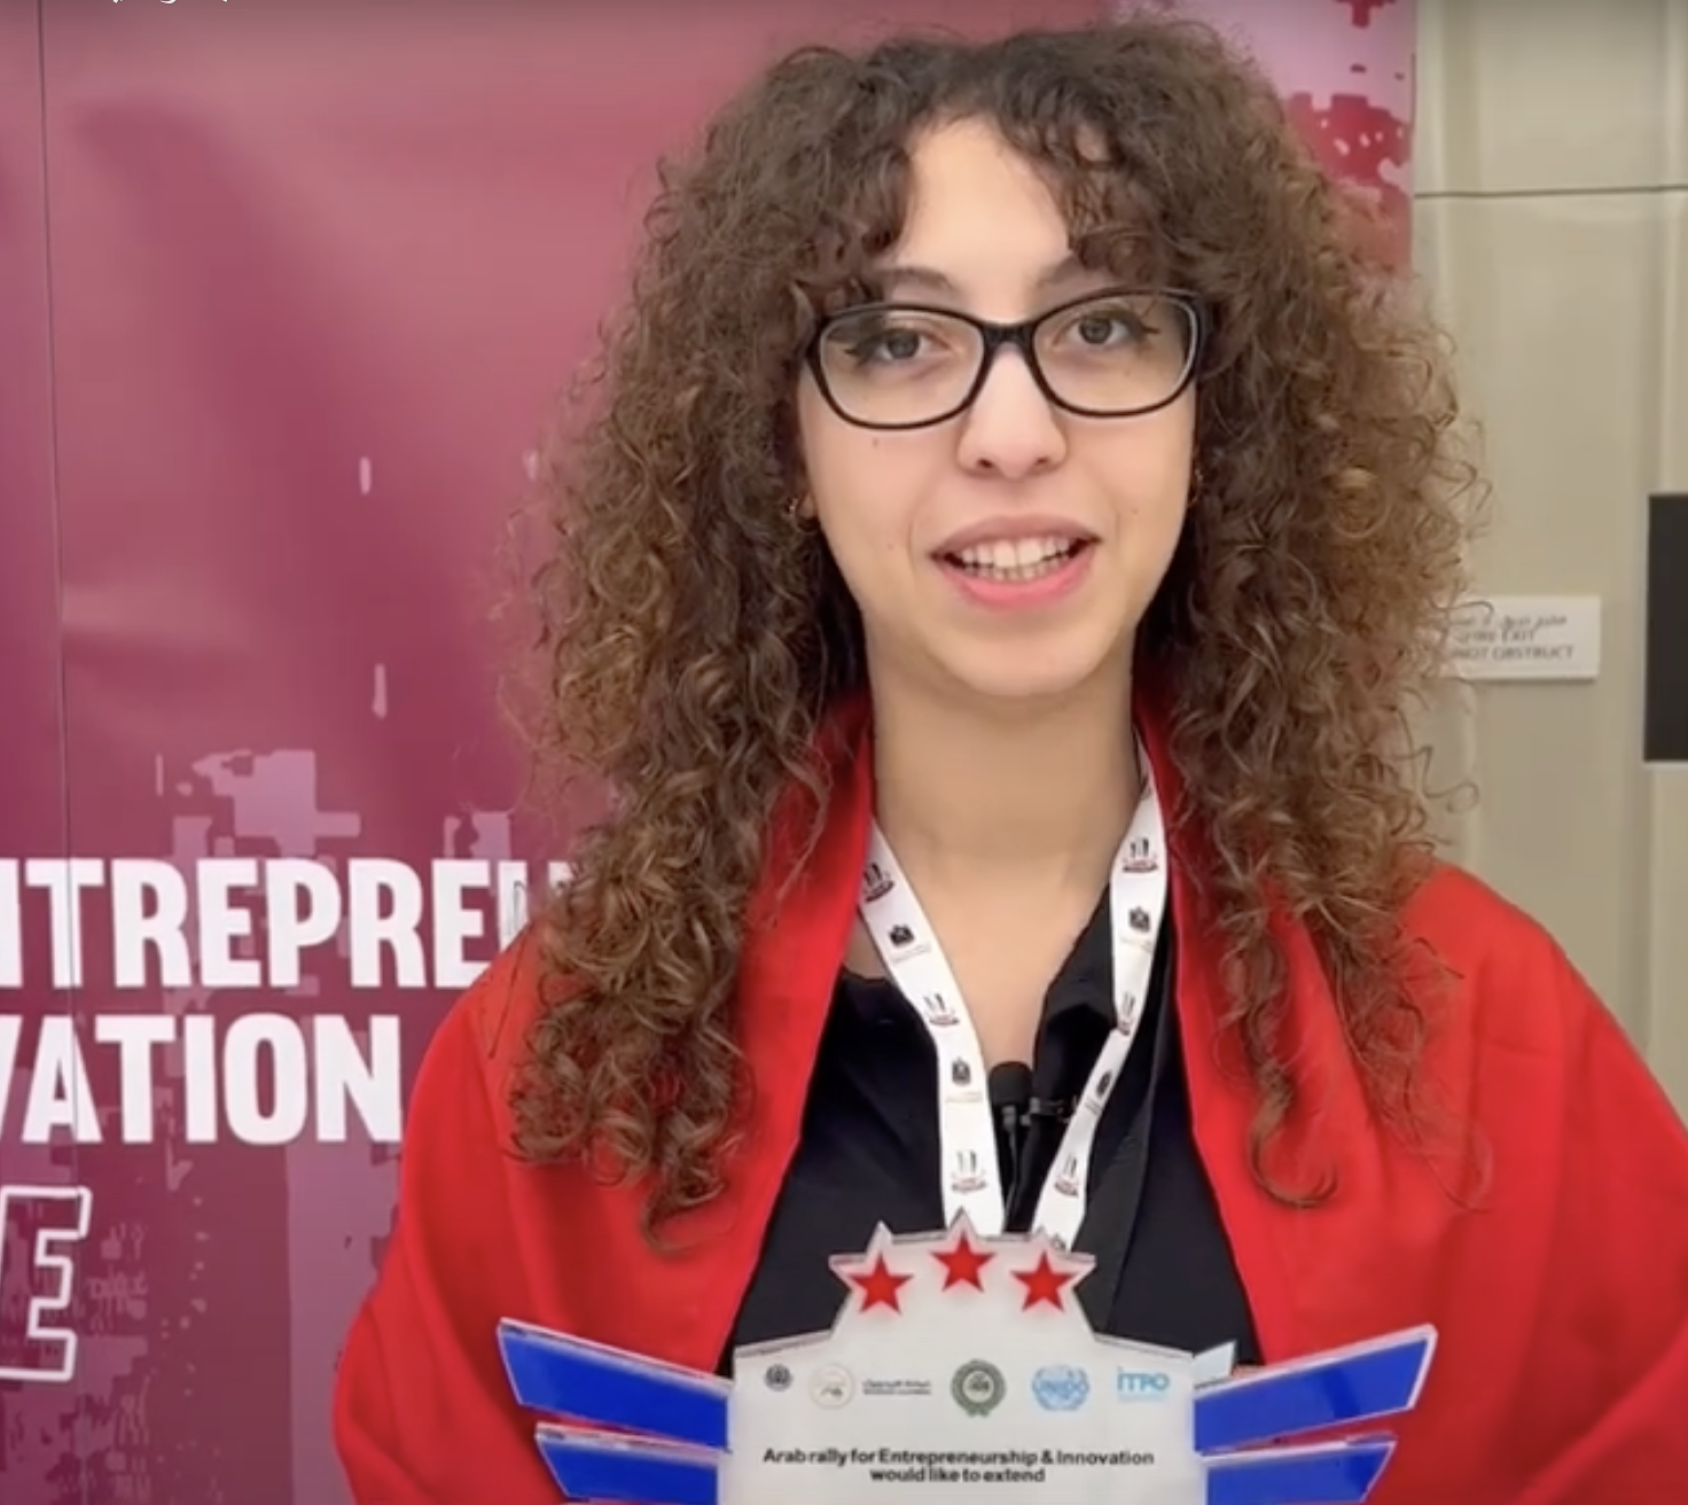 فازت إيلا زلفاني من تونس بجائزة تقديرية في مسابقة رالي العرب عن مشروعها نيوبيونيكس.